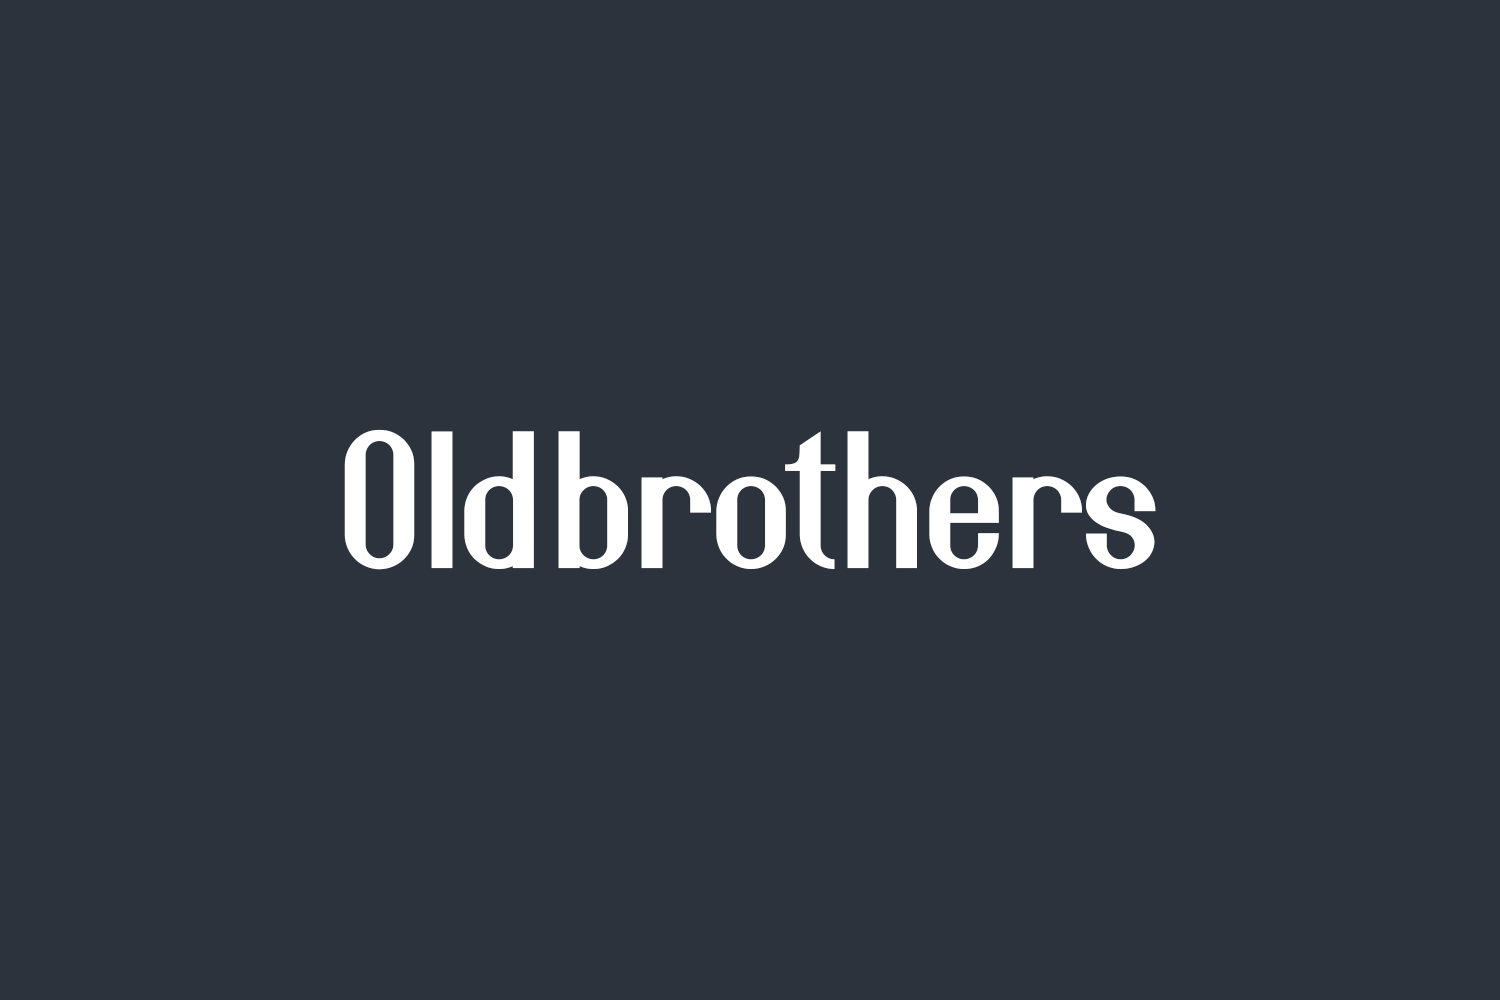 Oldbrothers Free Font